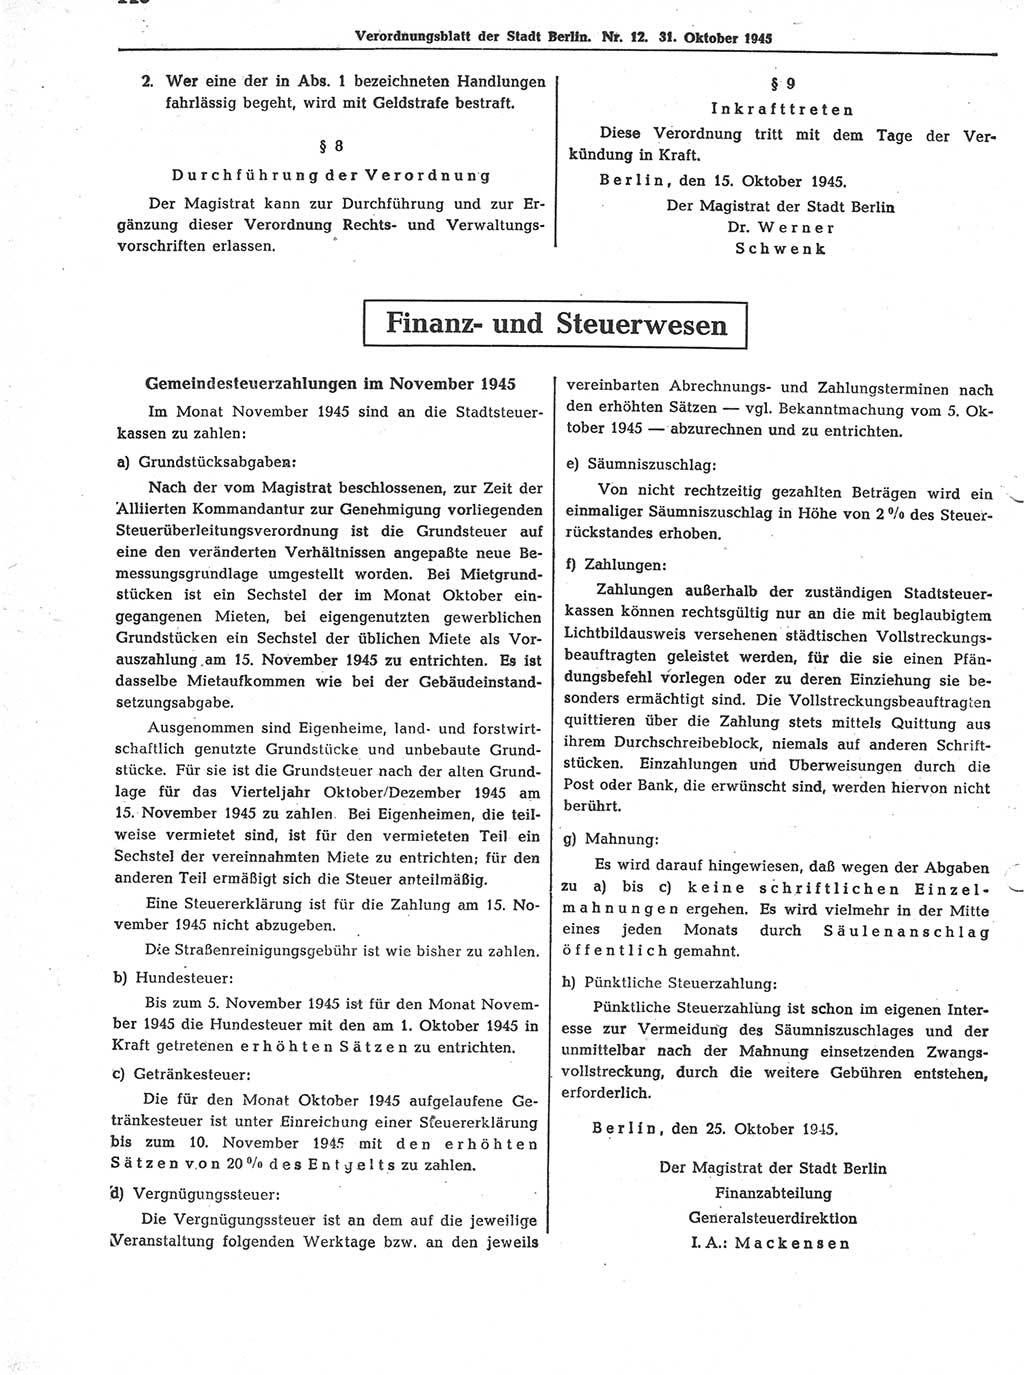 Verordnungsblatt (VOBl.) der Stadt Berlin 1945, Seite 146 (VOBl. Bln. 1945, S. 146)